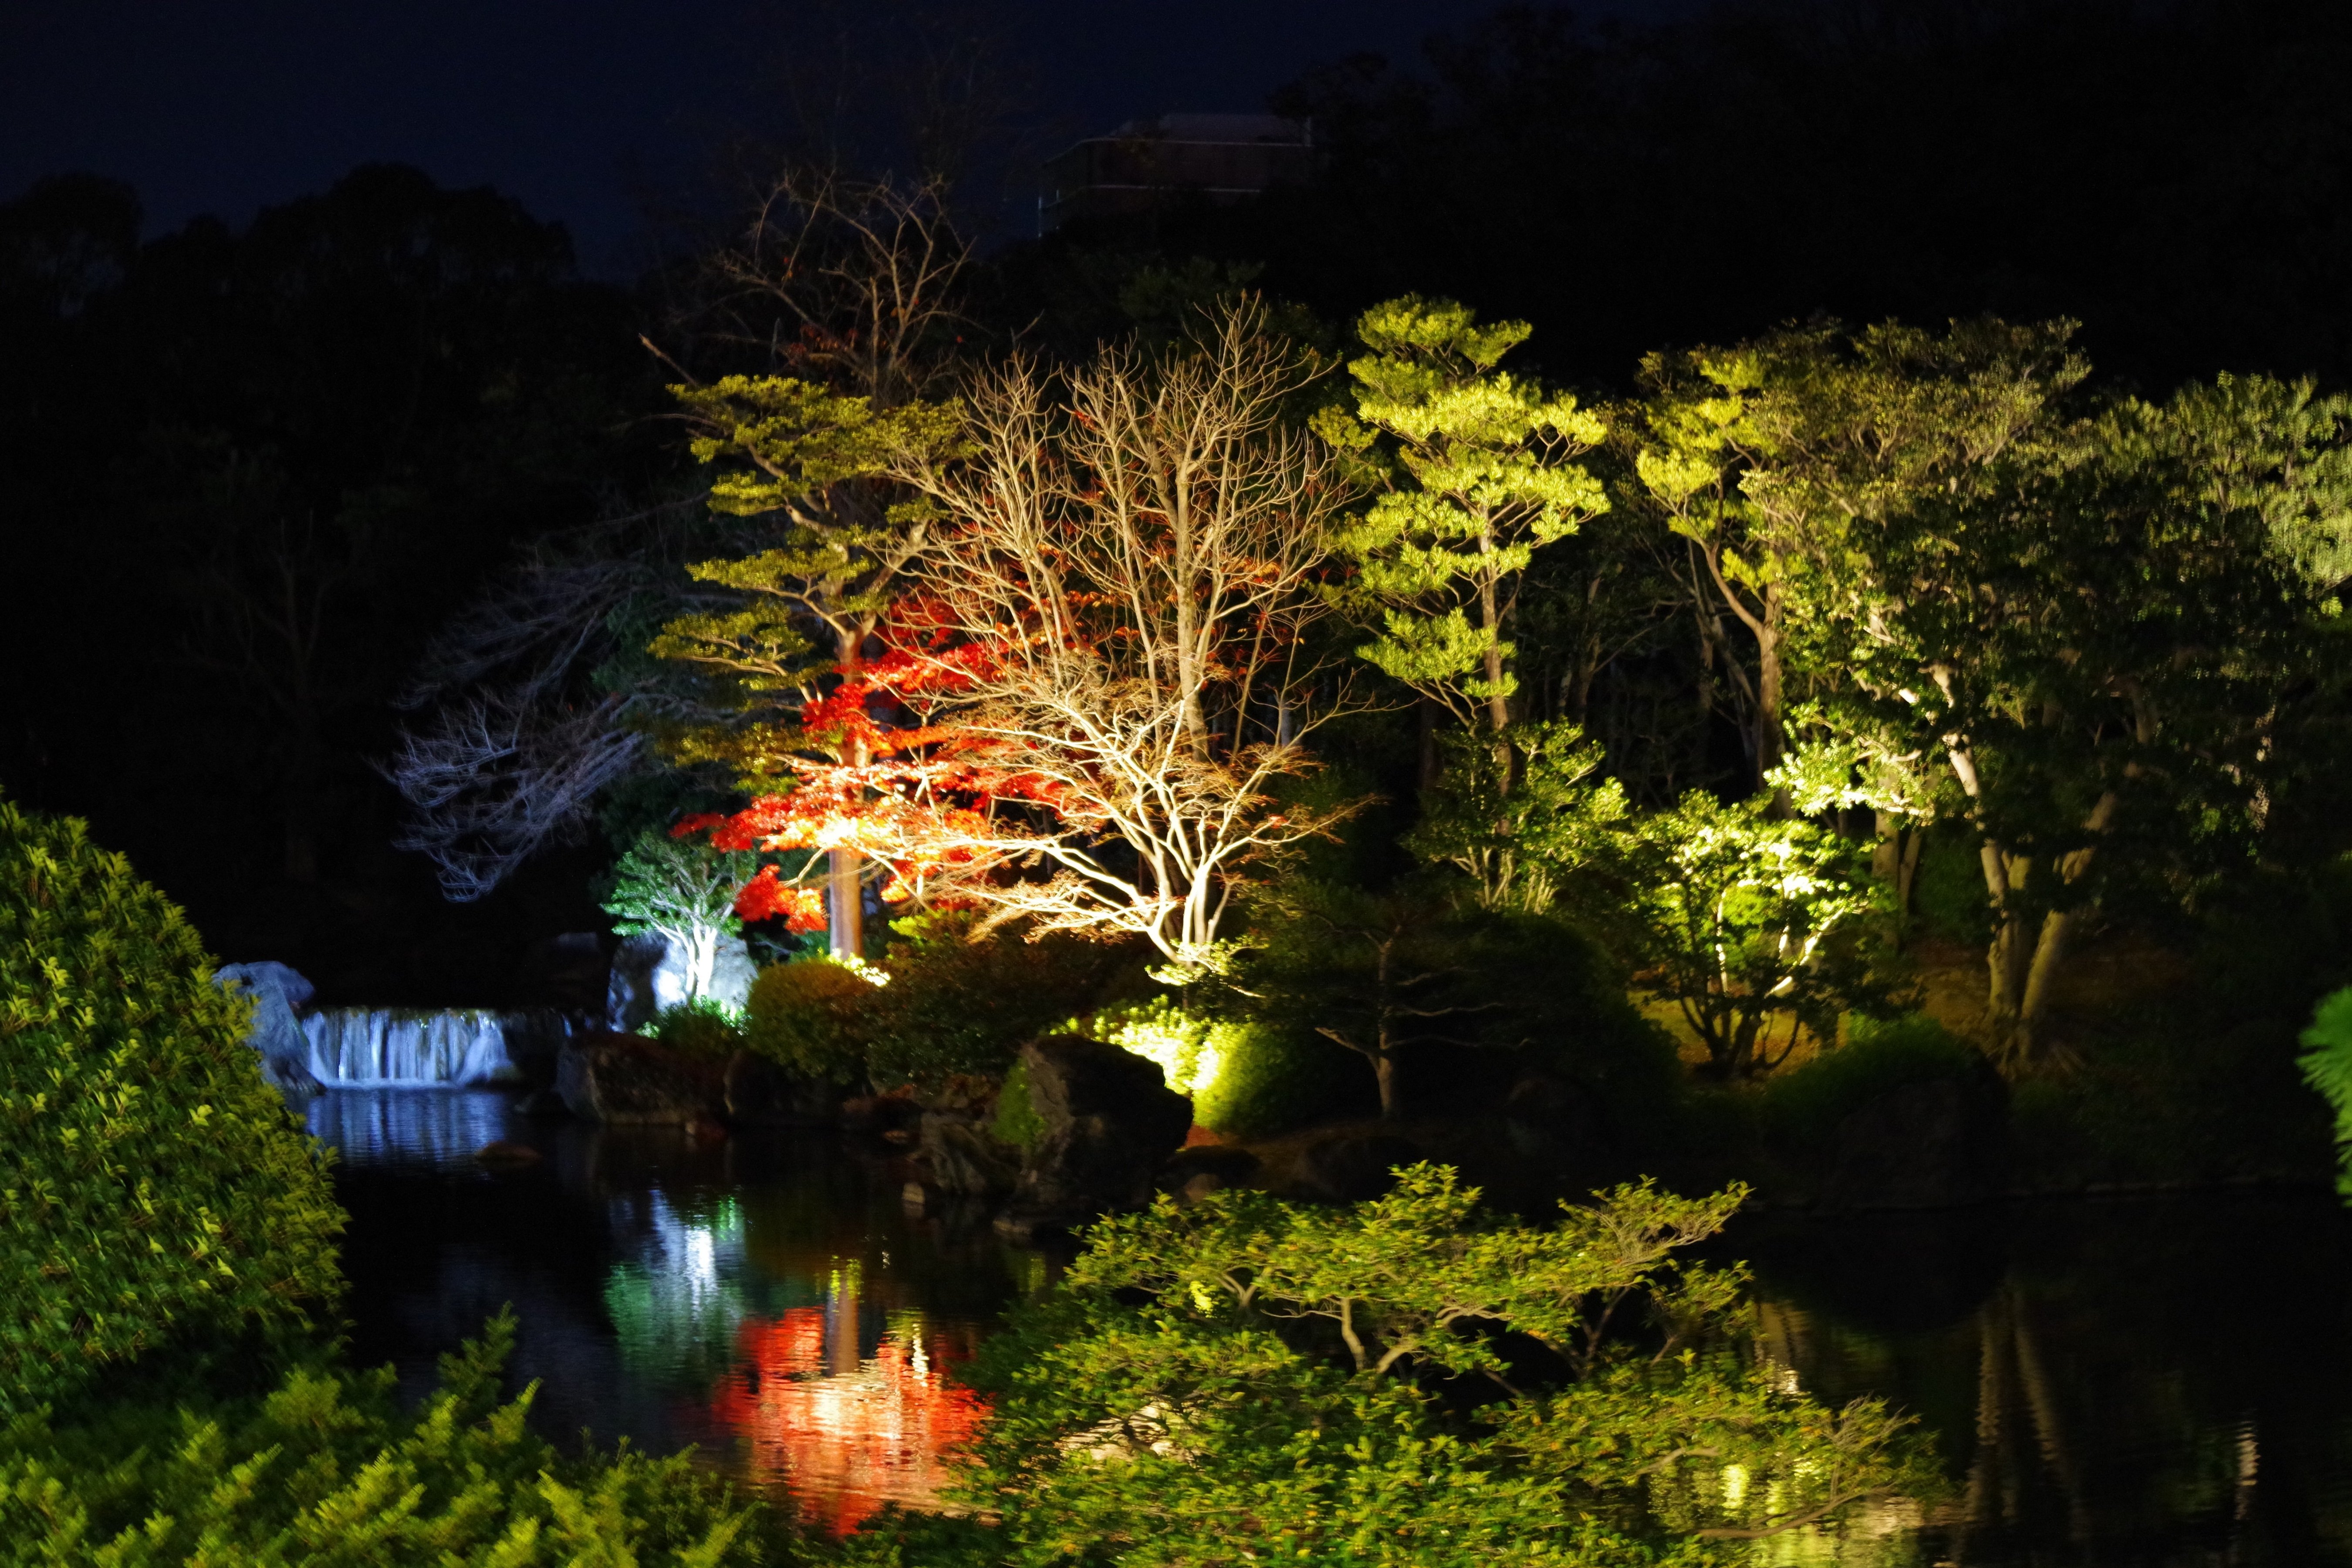 紅葉祭り 日本庭園夜間ライトアップ 万博記念公園 11 22 よく晴れたアルウィンで Note